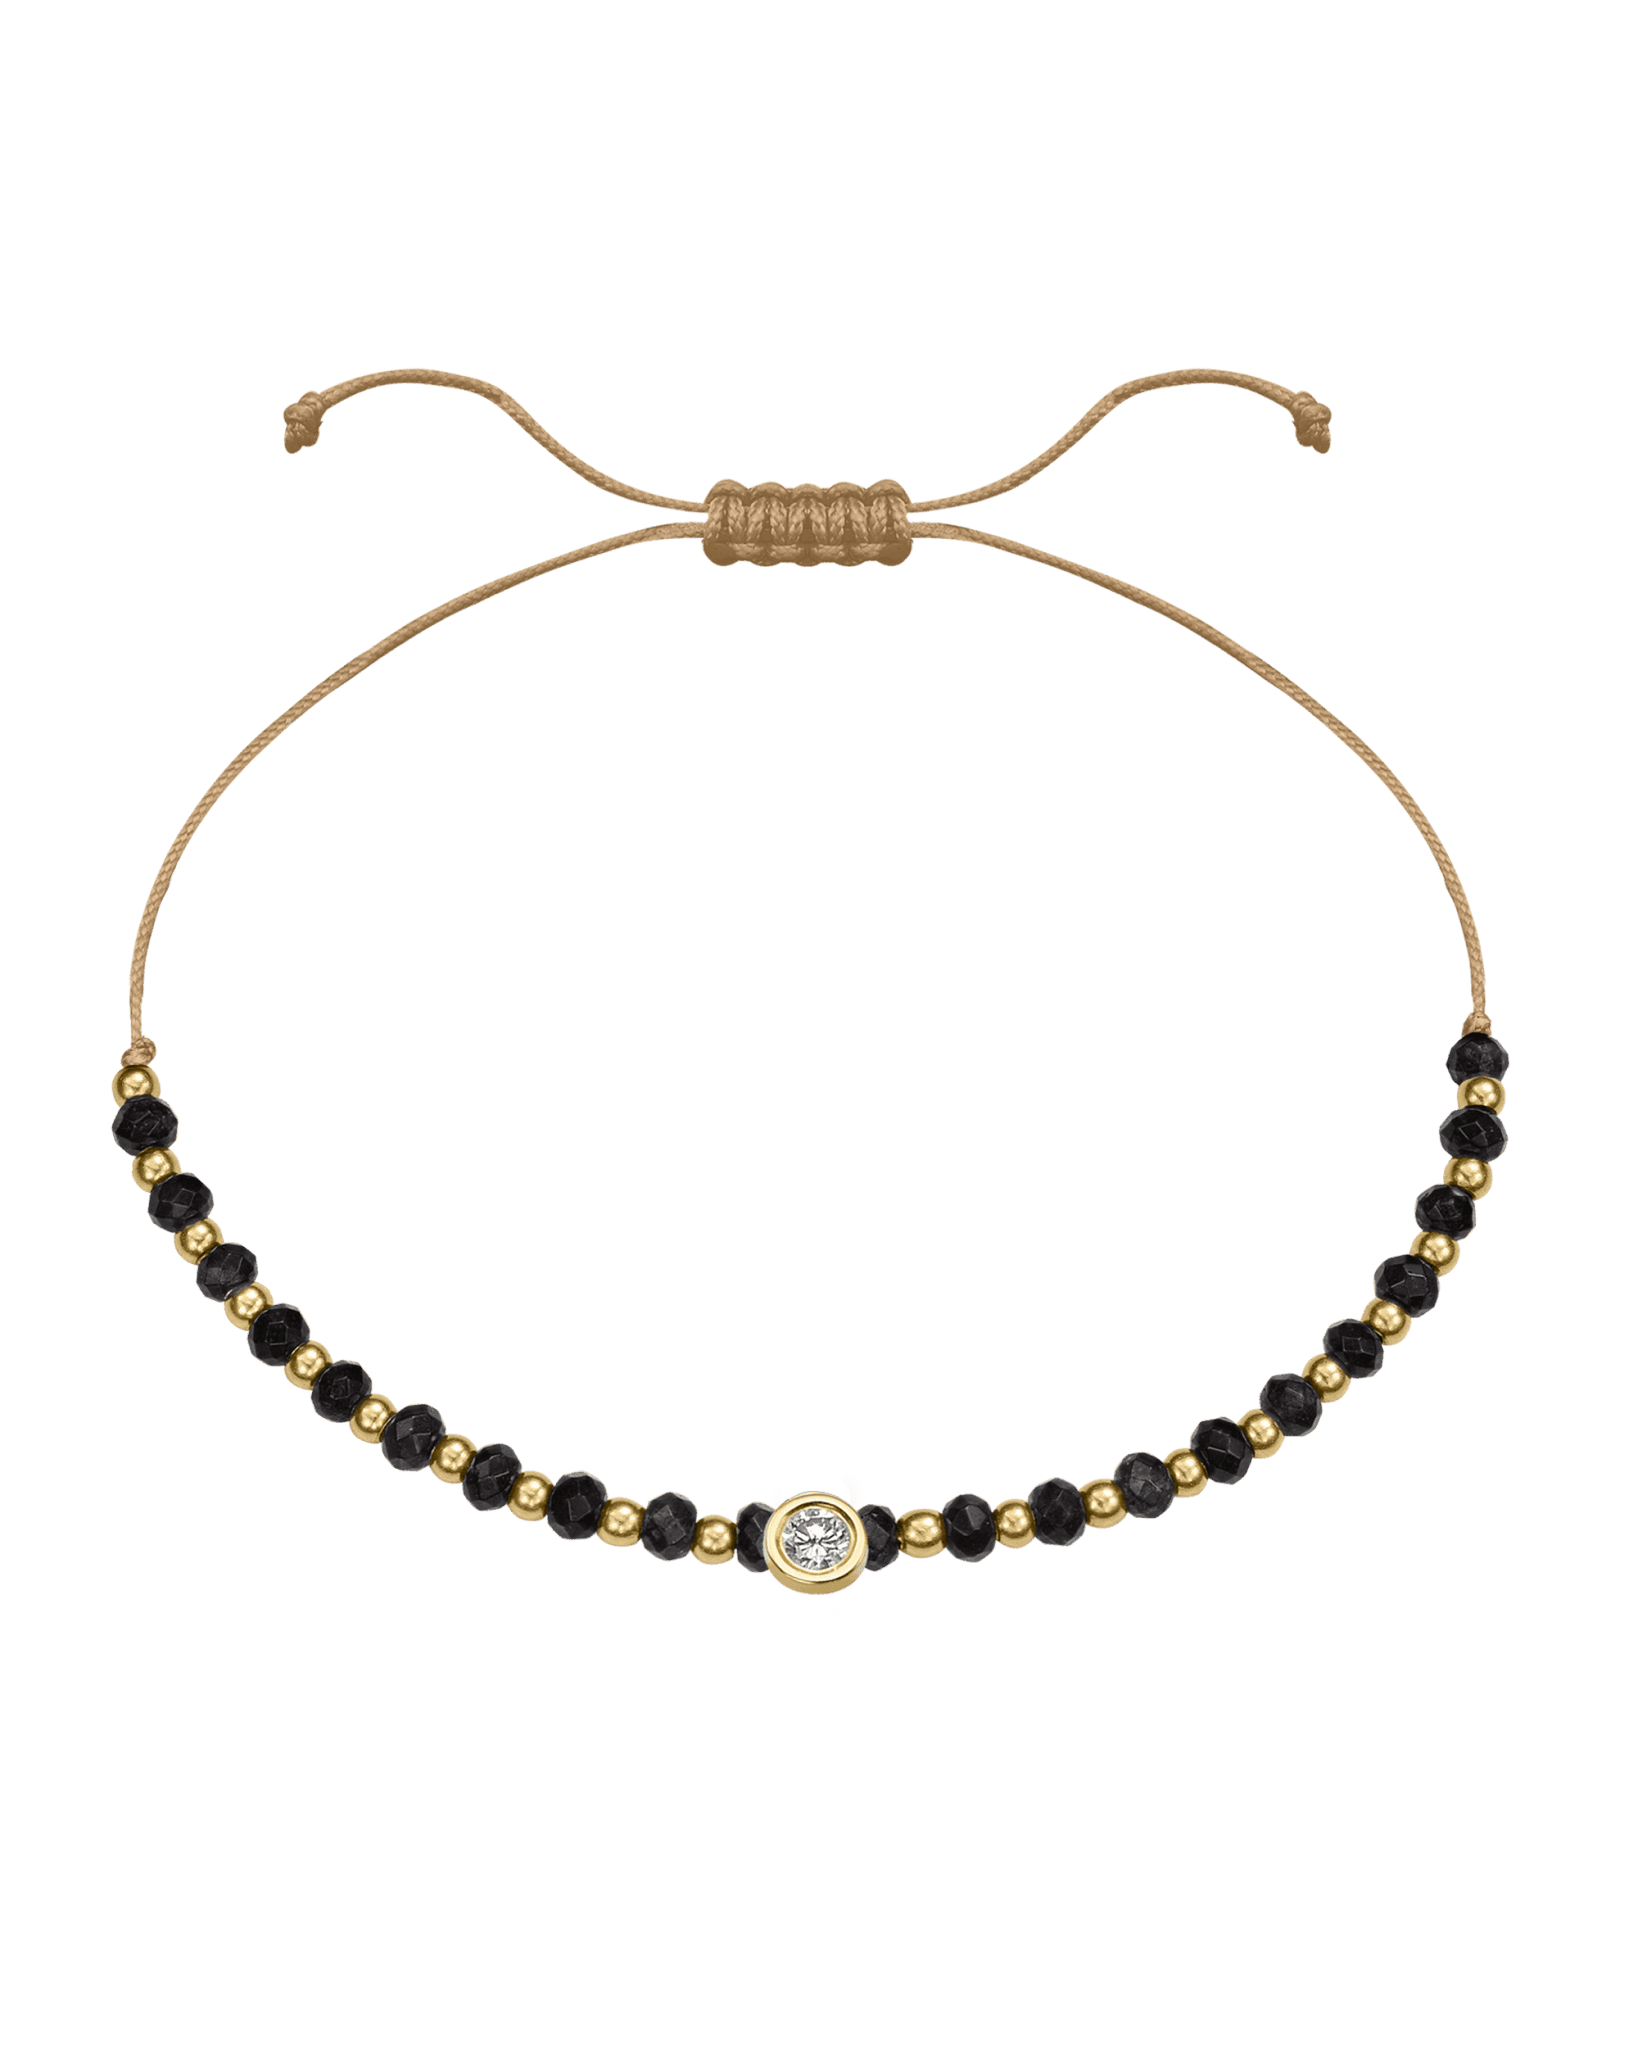 Black Onyx Gemstone String of Love Bracelet for Protection - 14K Yellow Gold Bracelets 14K Solid Gold Camel Large: 0.1ct 